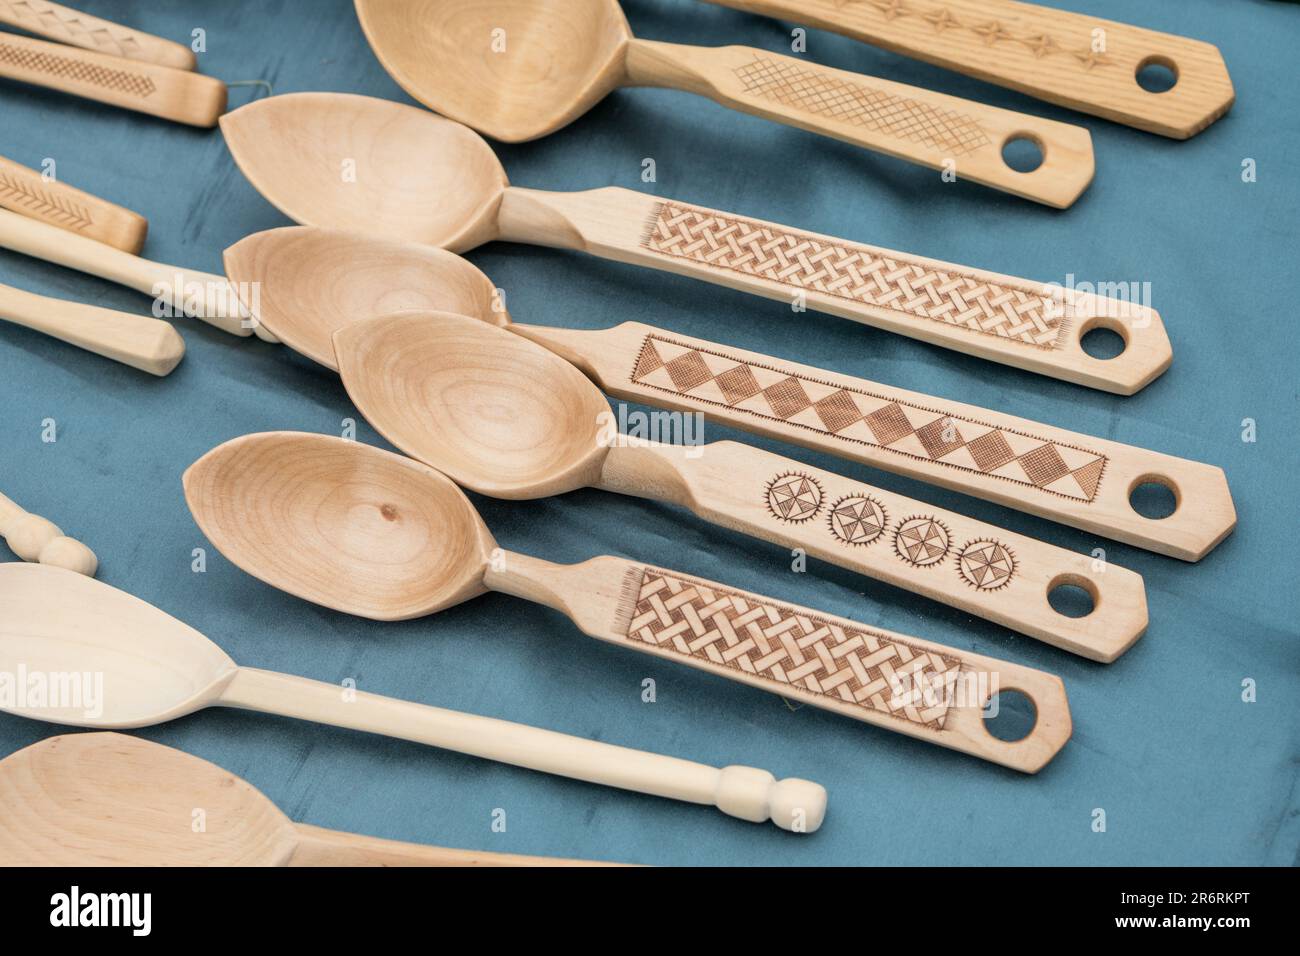 The Wooden utensils Stock Photo by ©oksixx 109480050